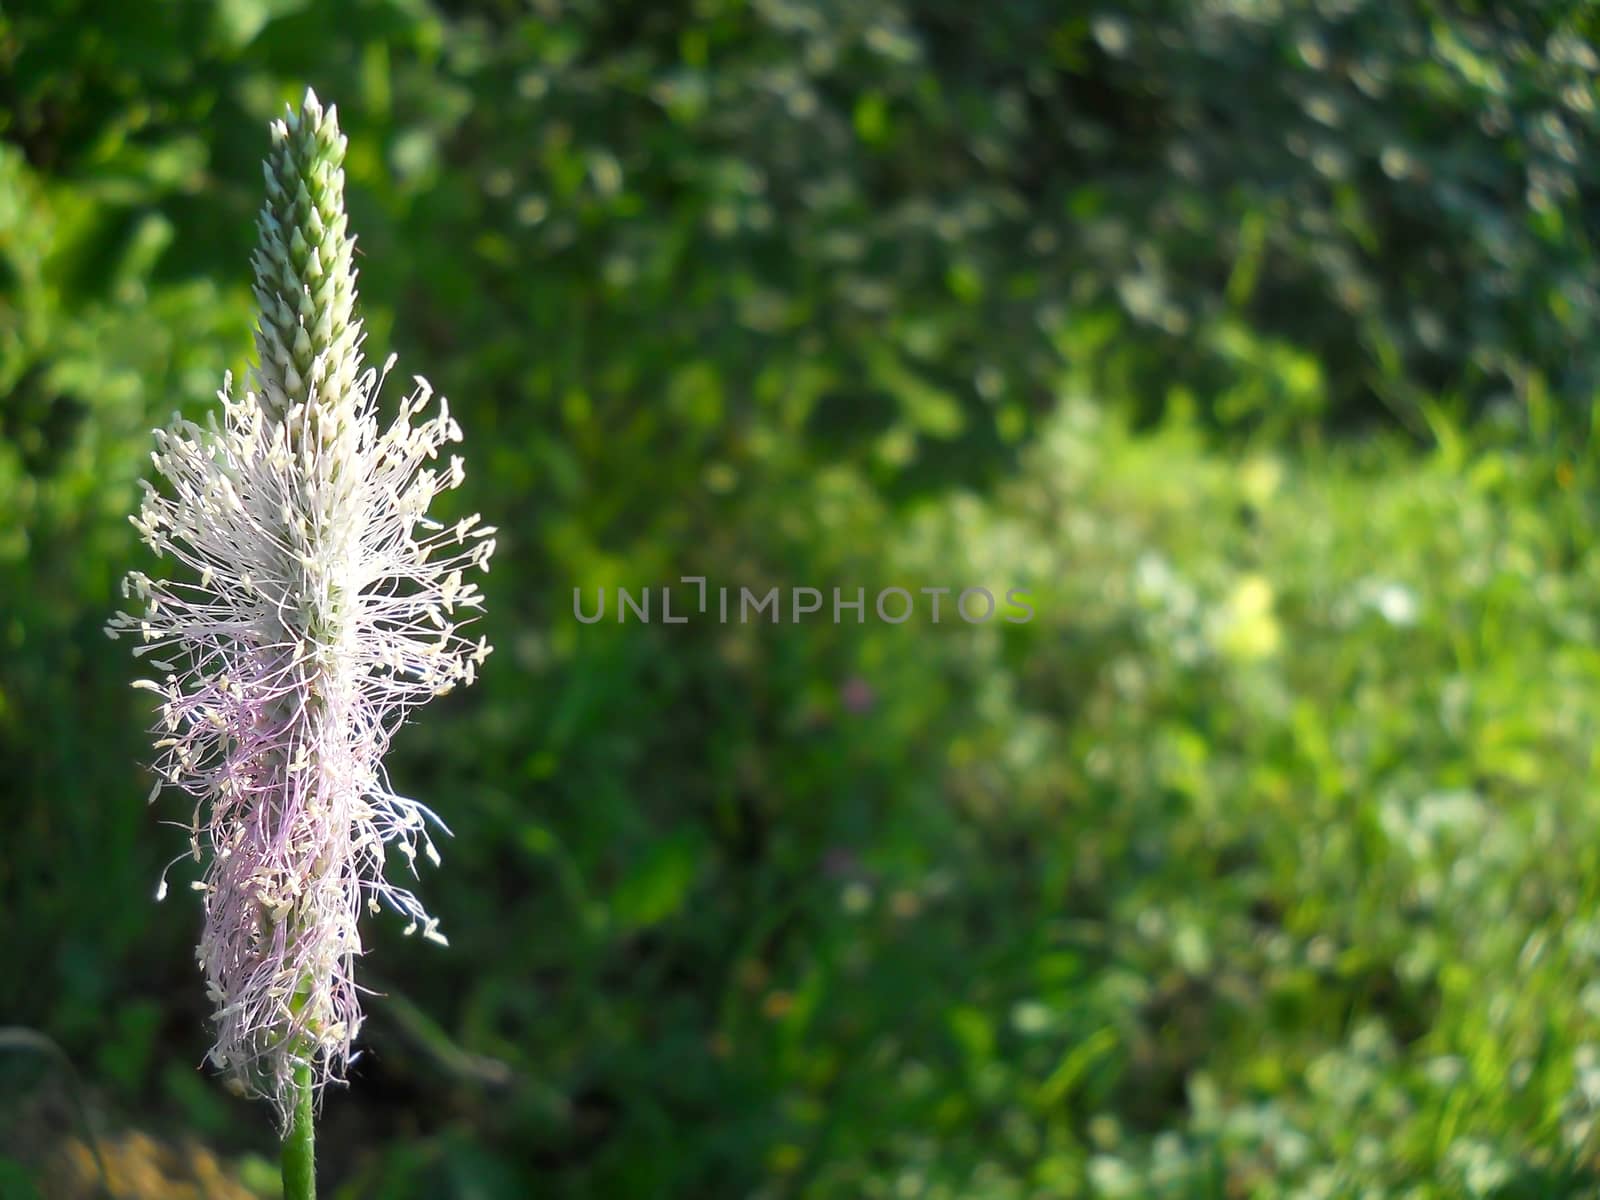 lilac wildflower